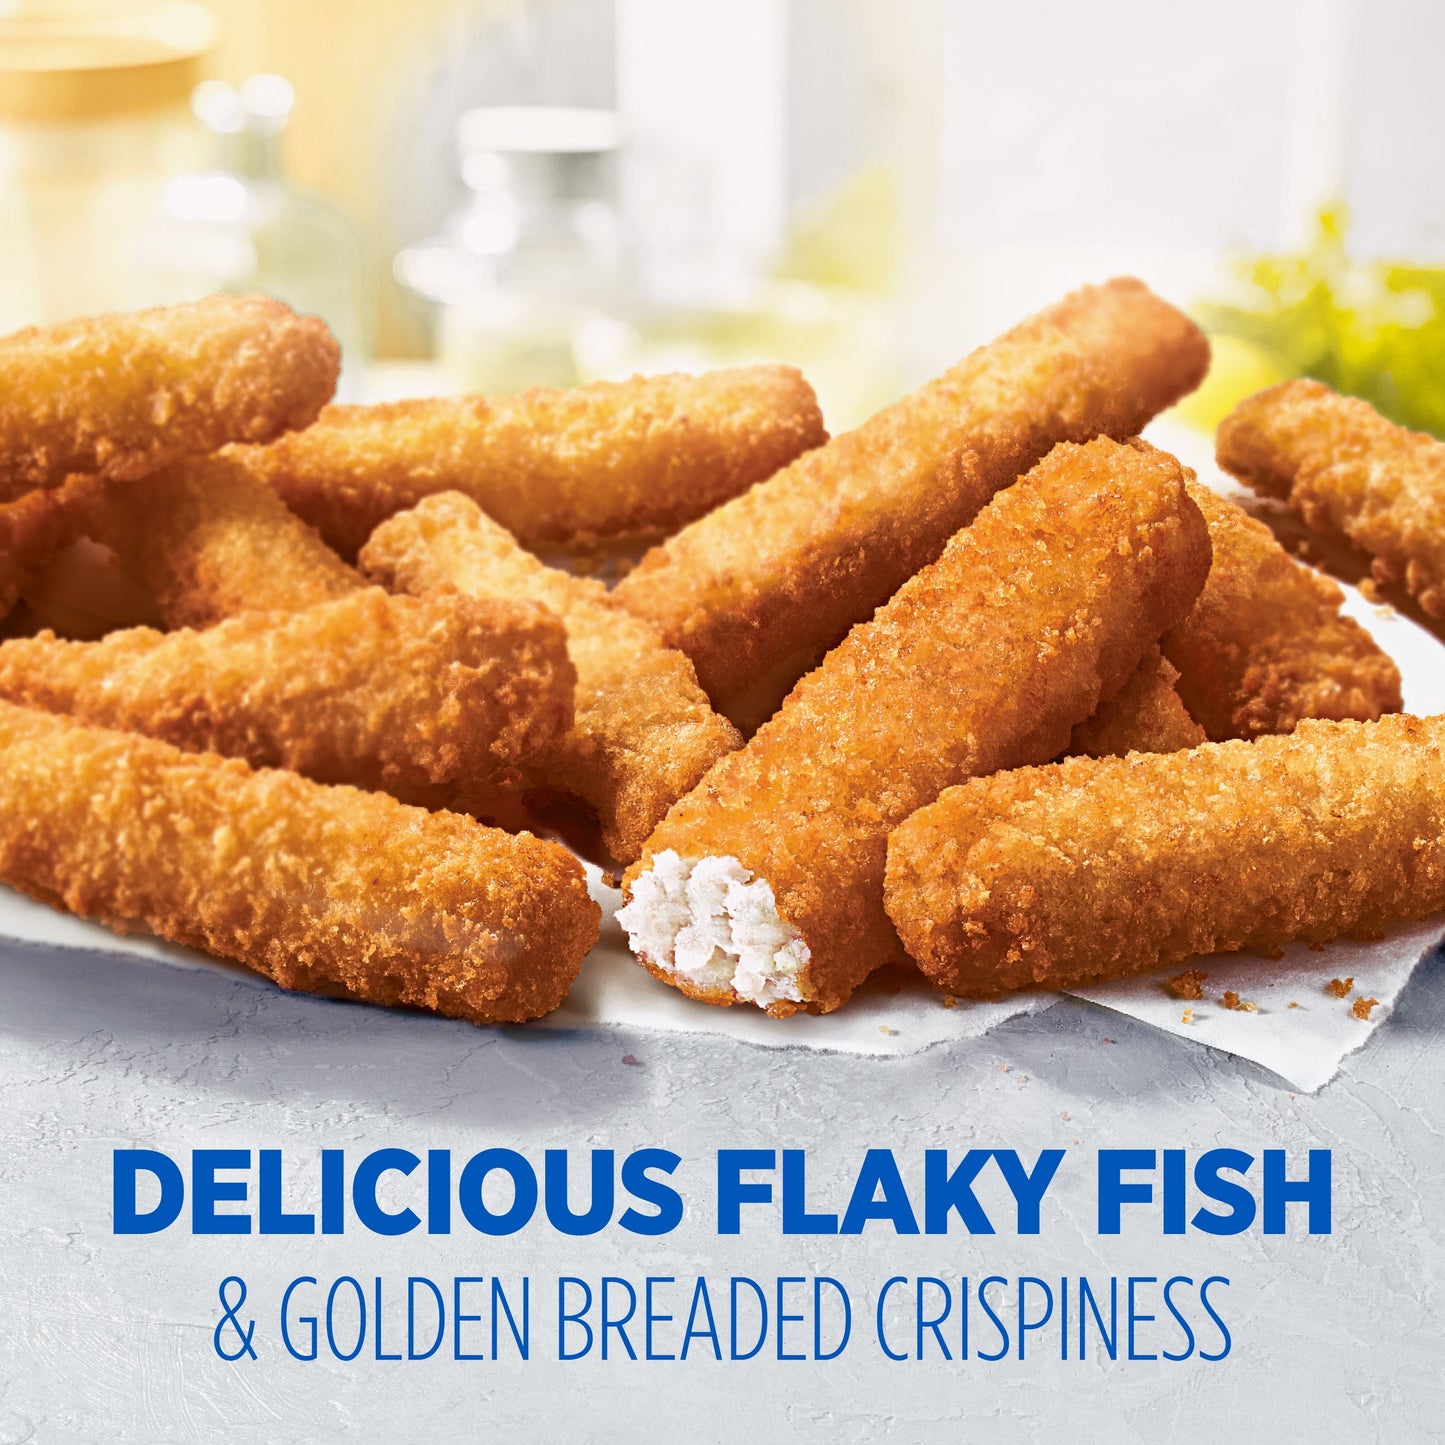 Van De Kamp's Wild Caught Crunchy Breaded Fish Sticks, 24.6 oz, 44 Ct (Frozen)